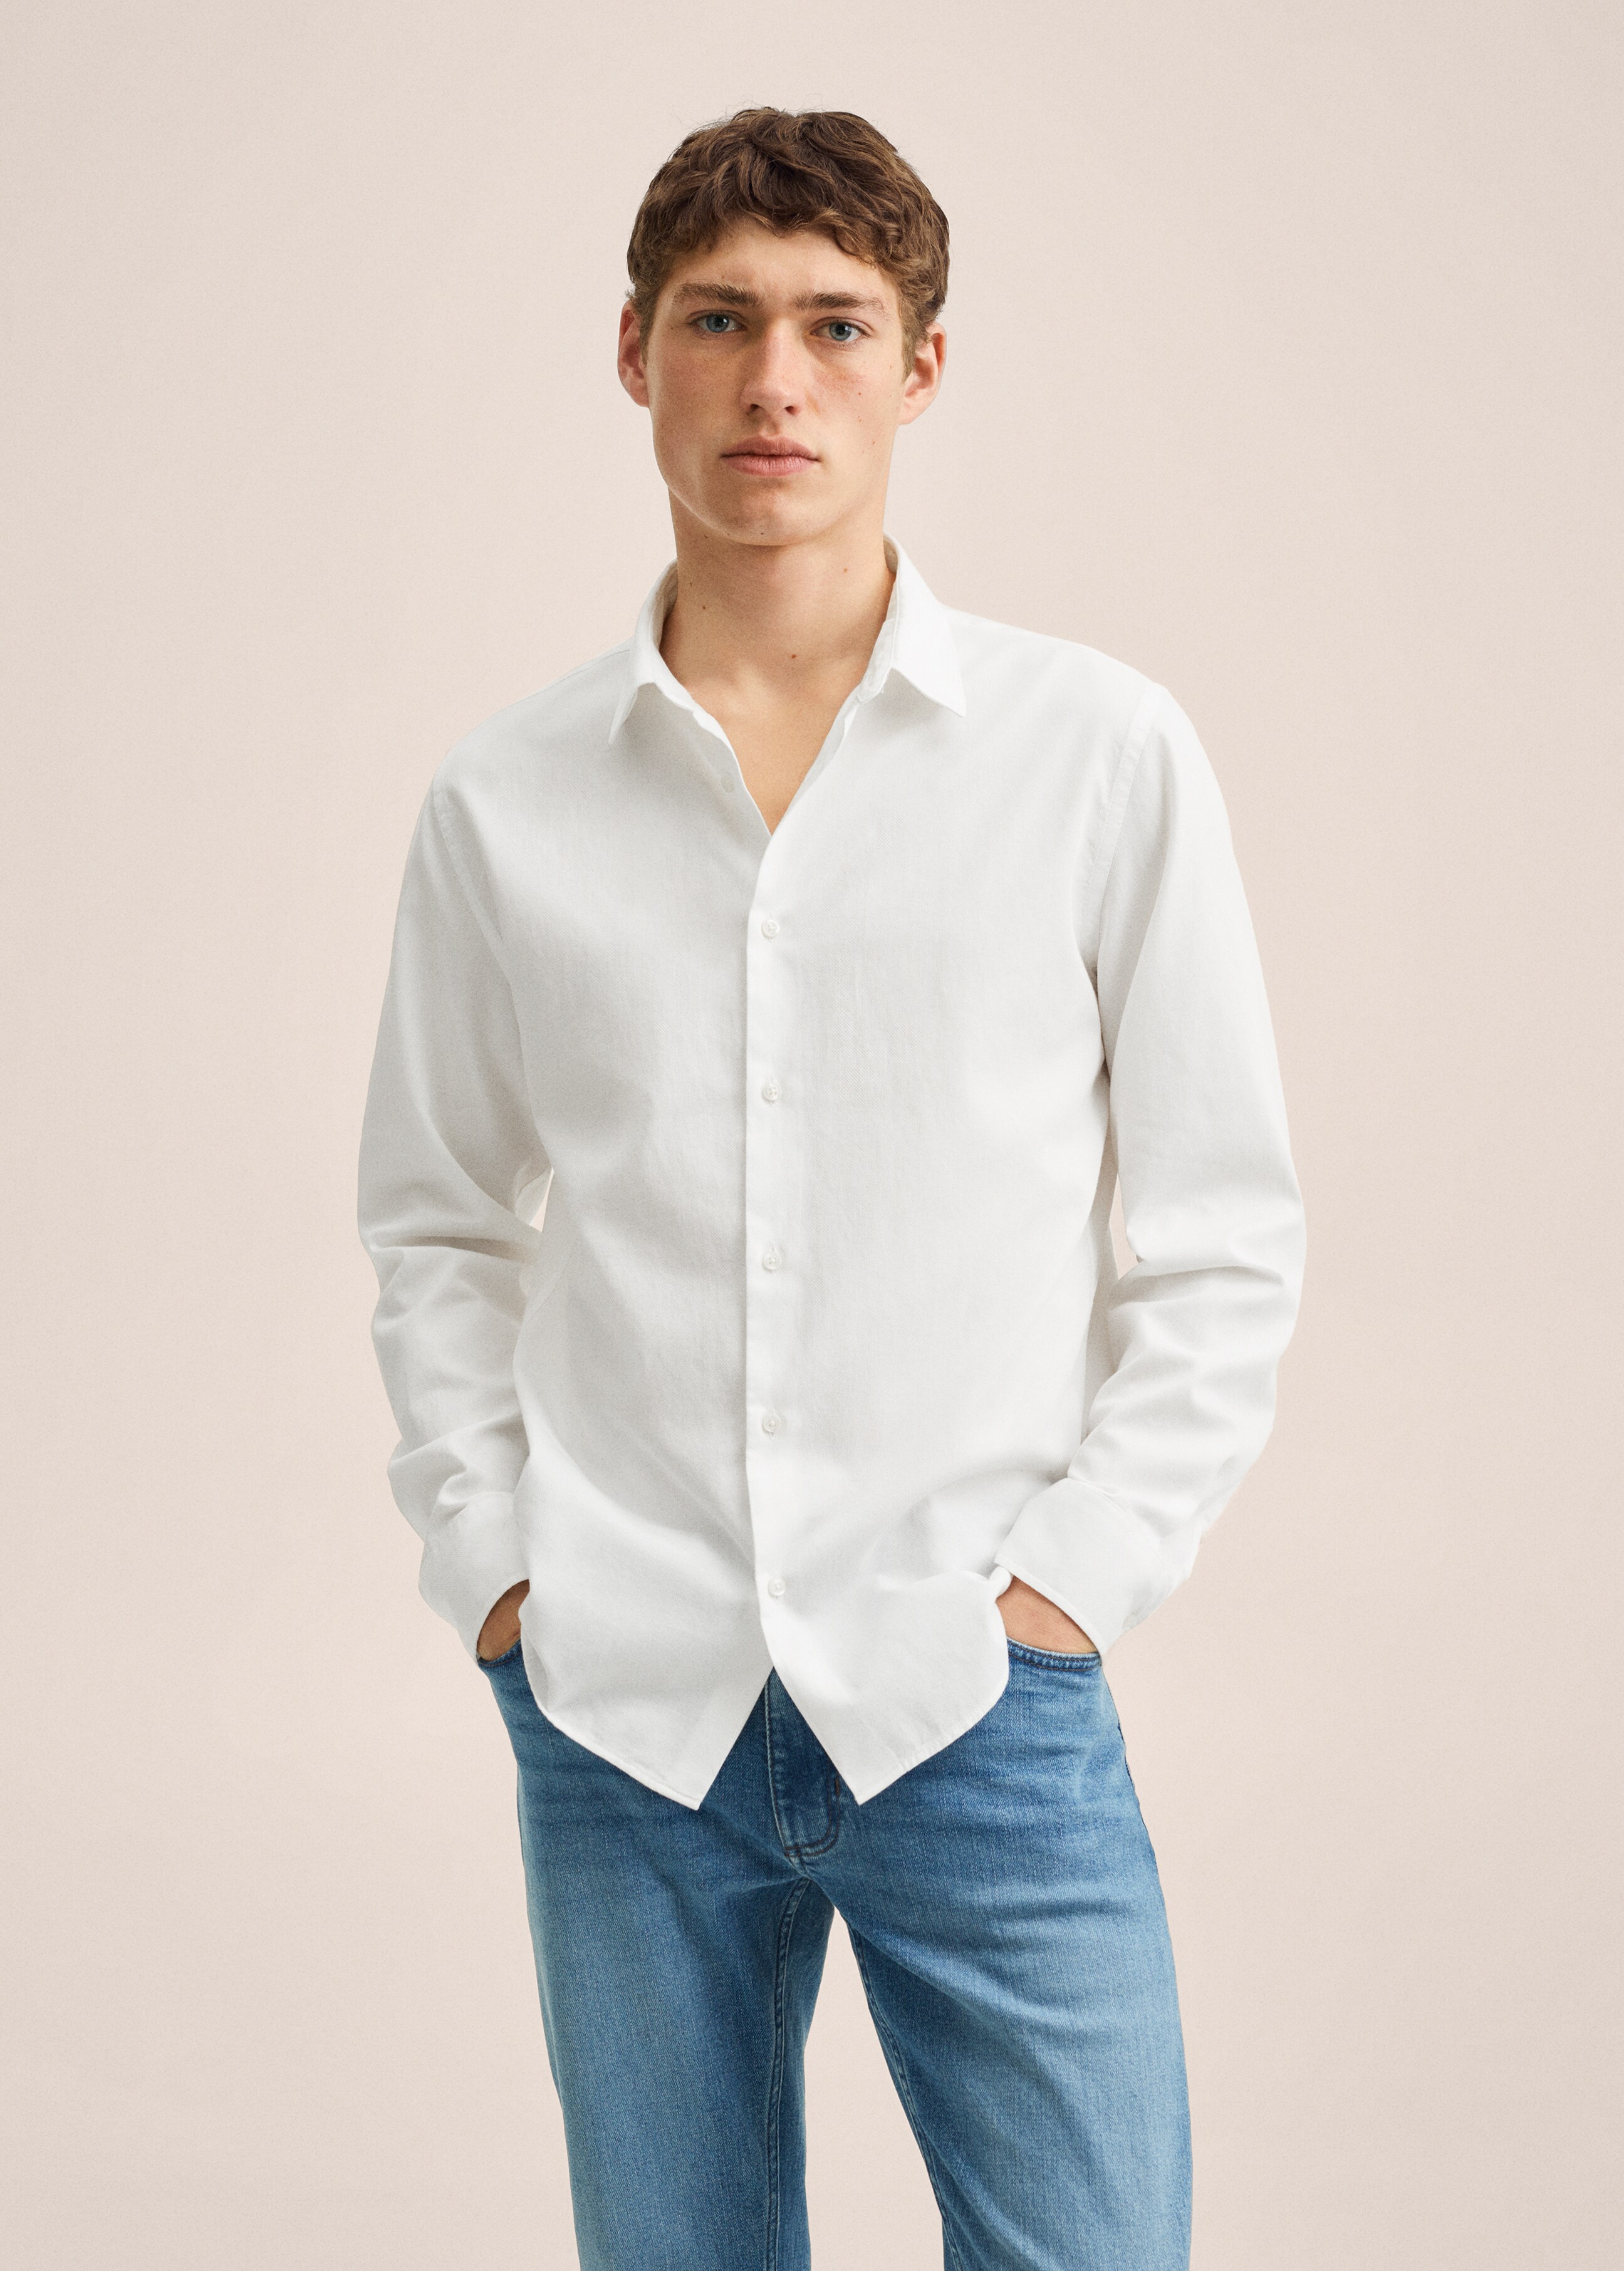 Slim fit structured cotton shirt - Medium plane